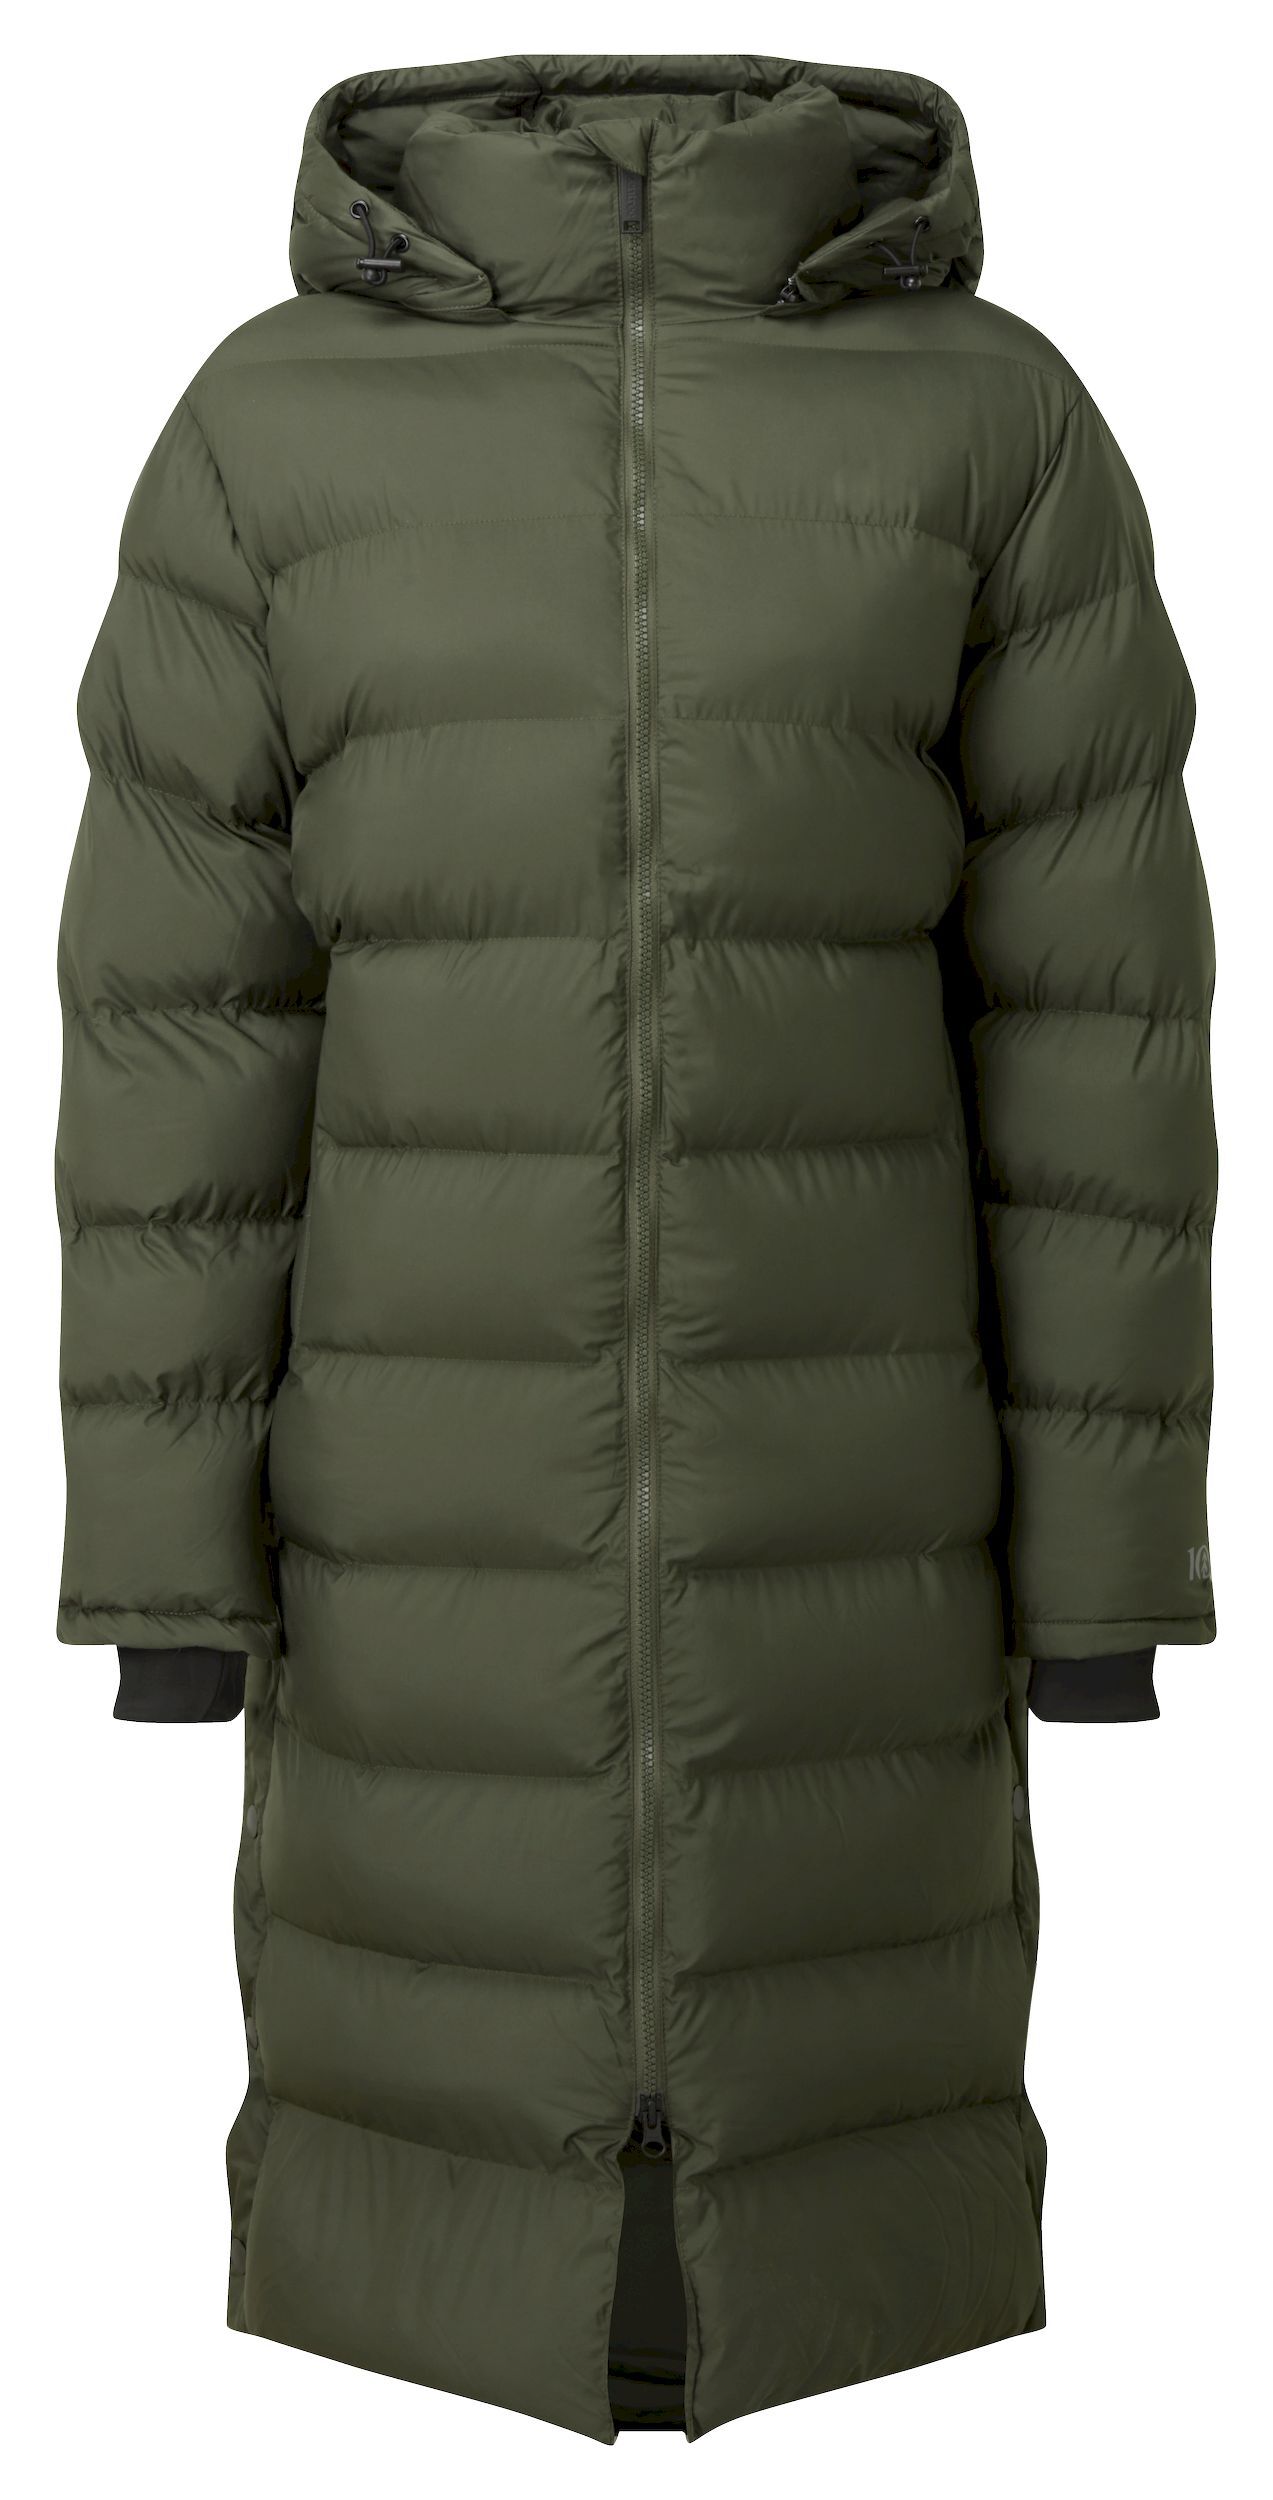 Tentree Cloud Shell Long Puffer - Down jacket - Women's